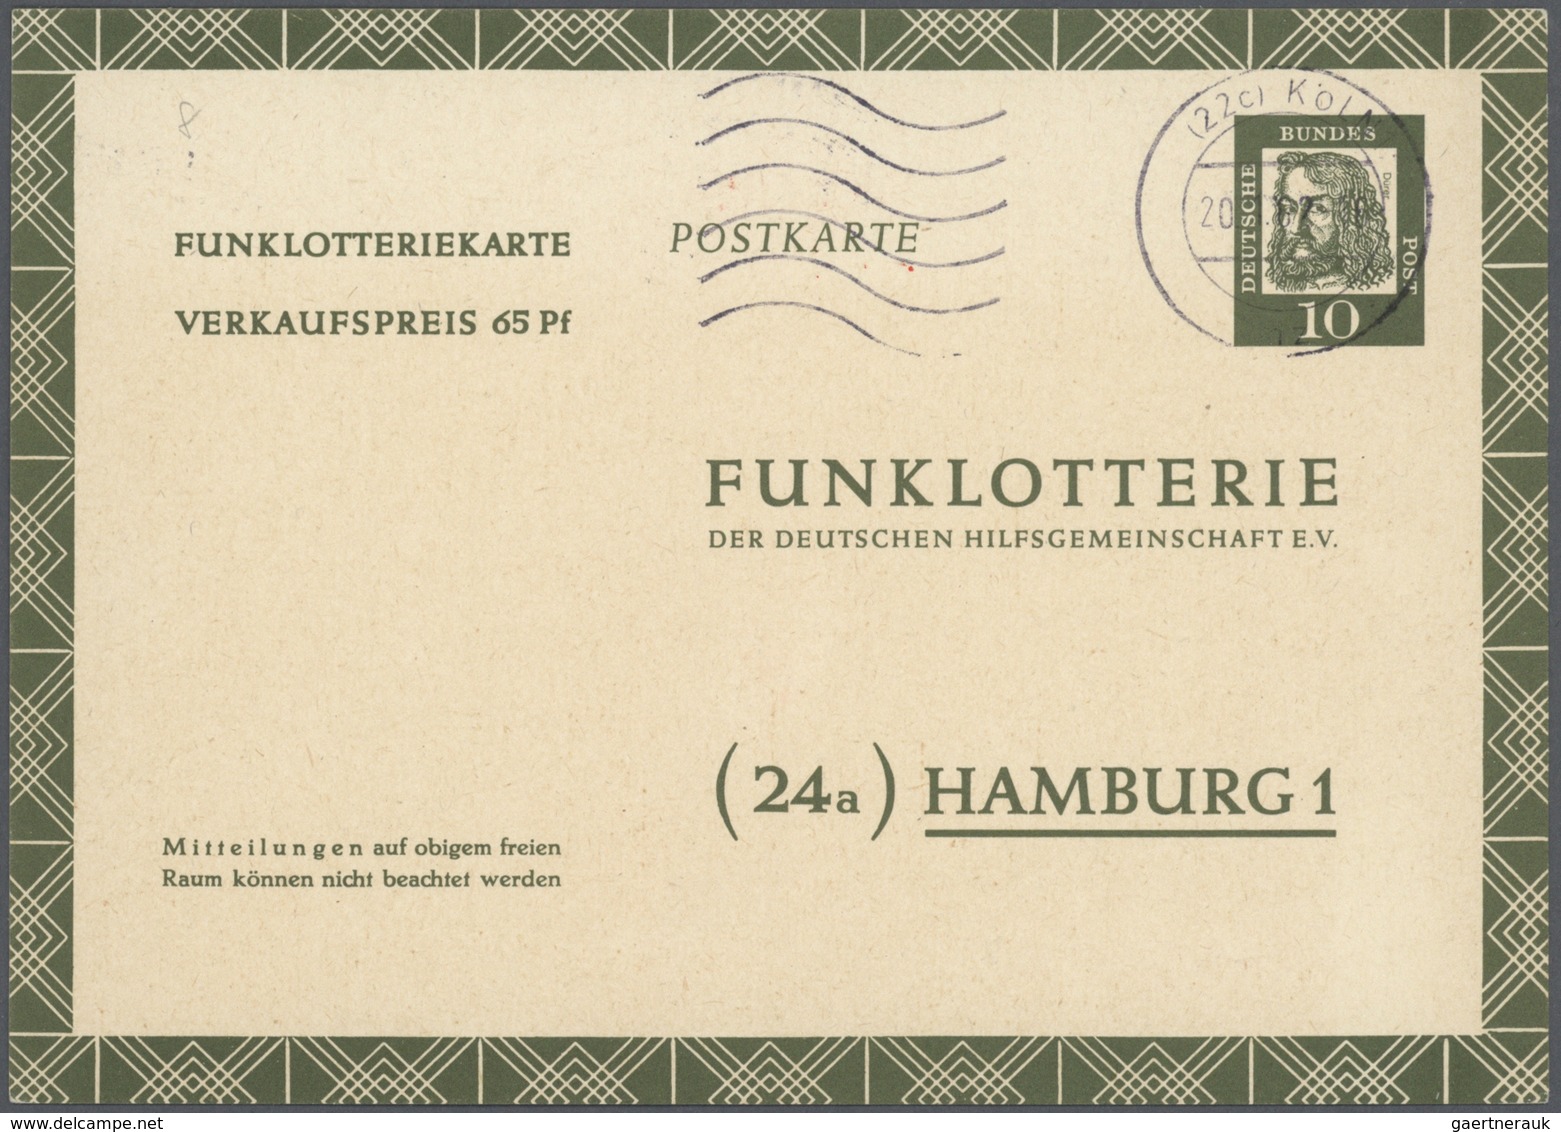 32846 Bundesrepublik - Ganzsachen: 1948/2011. Umfangreiche Sammlung mit einigen hundert Karten, Luftpostle